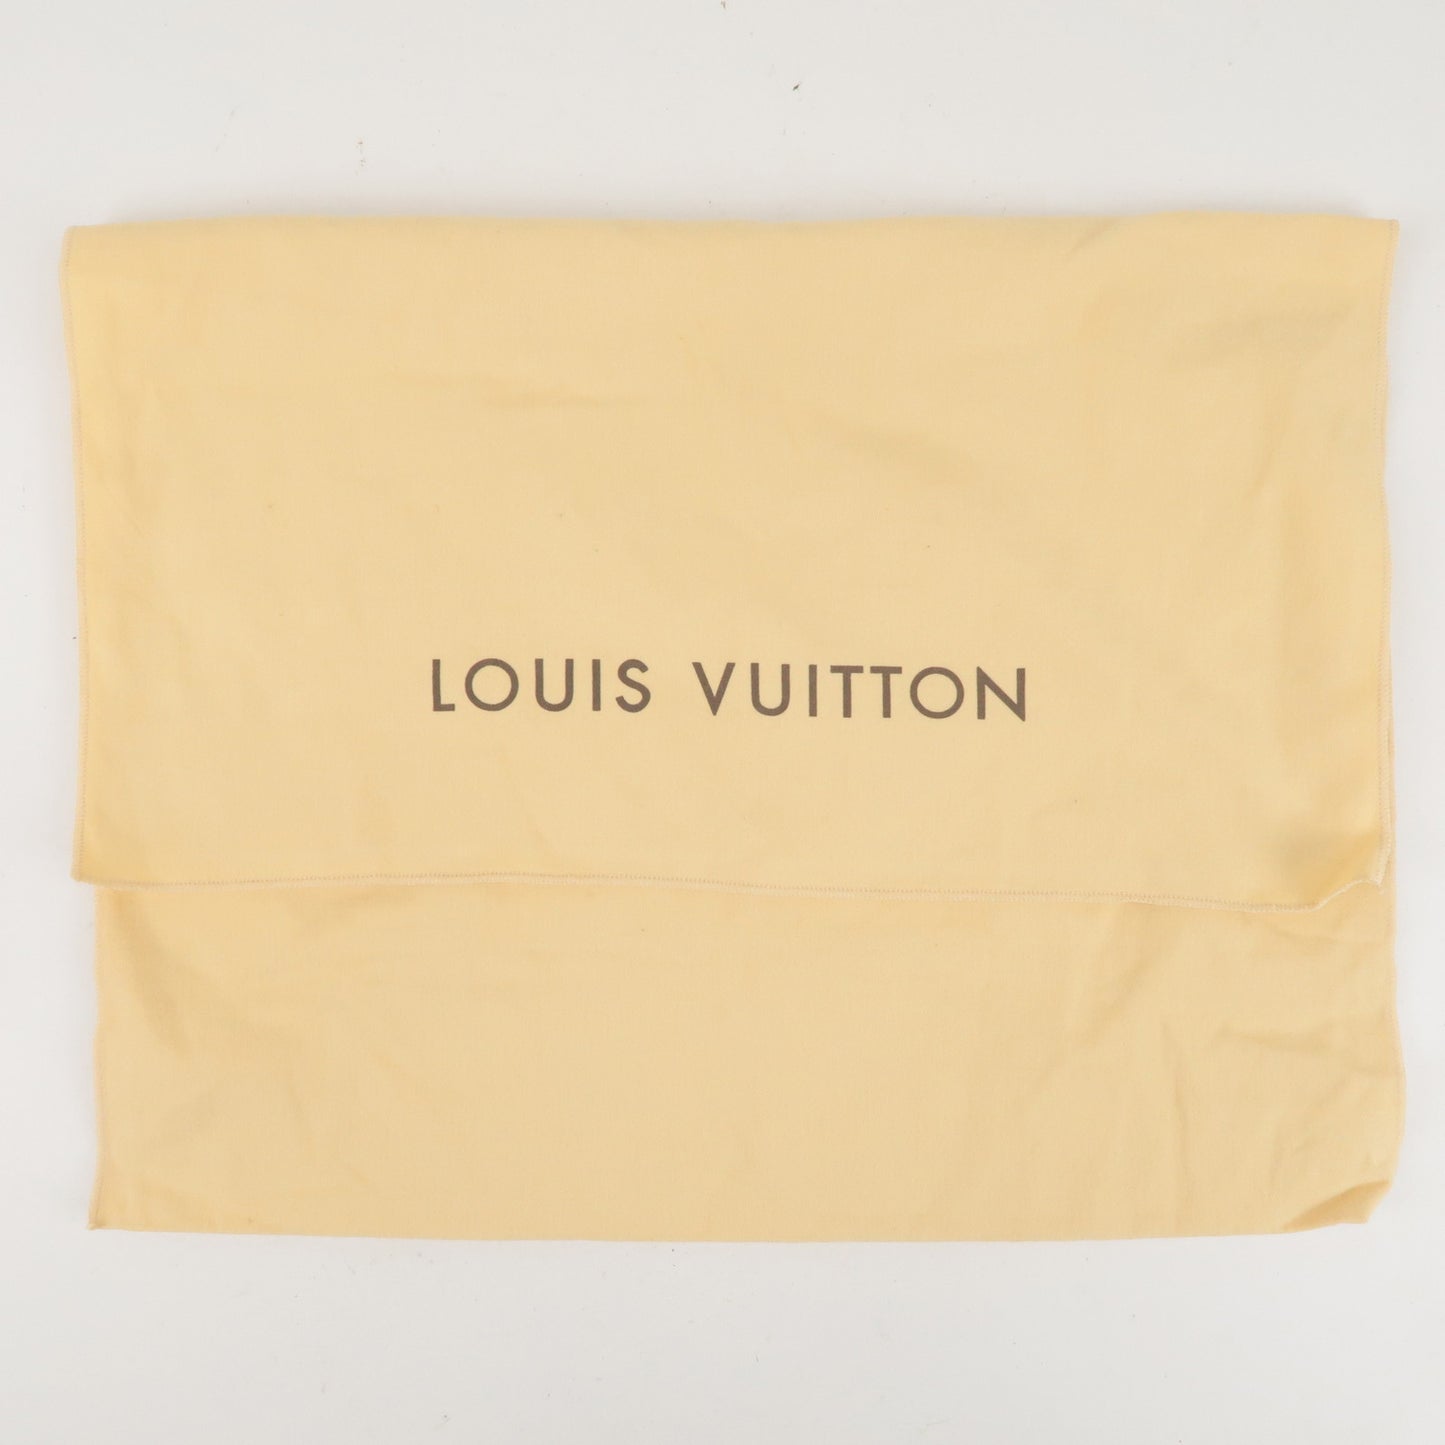 Authentic Louis Vuitton Dust Bag